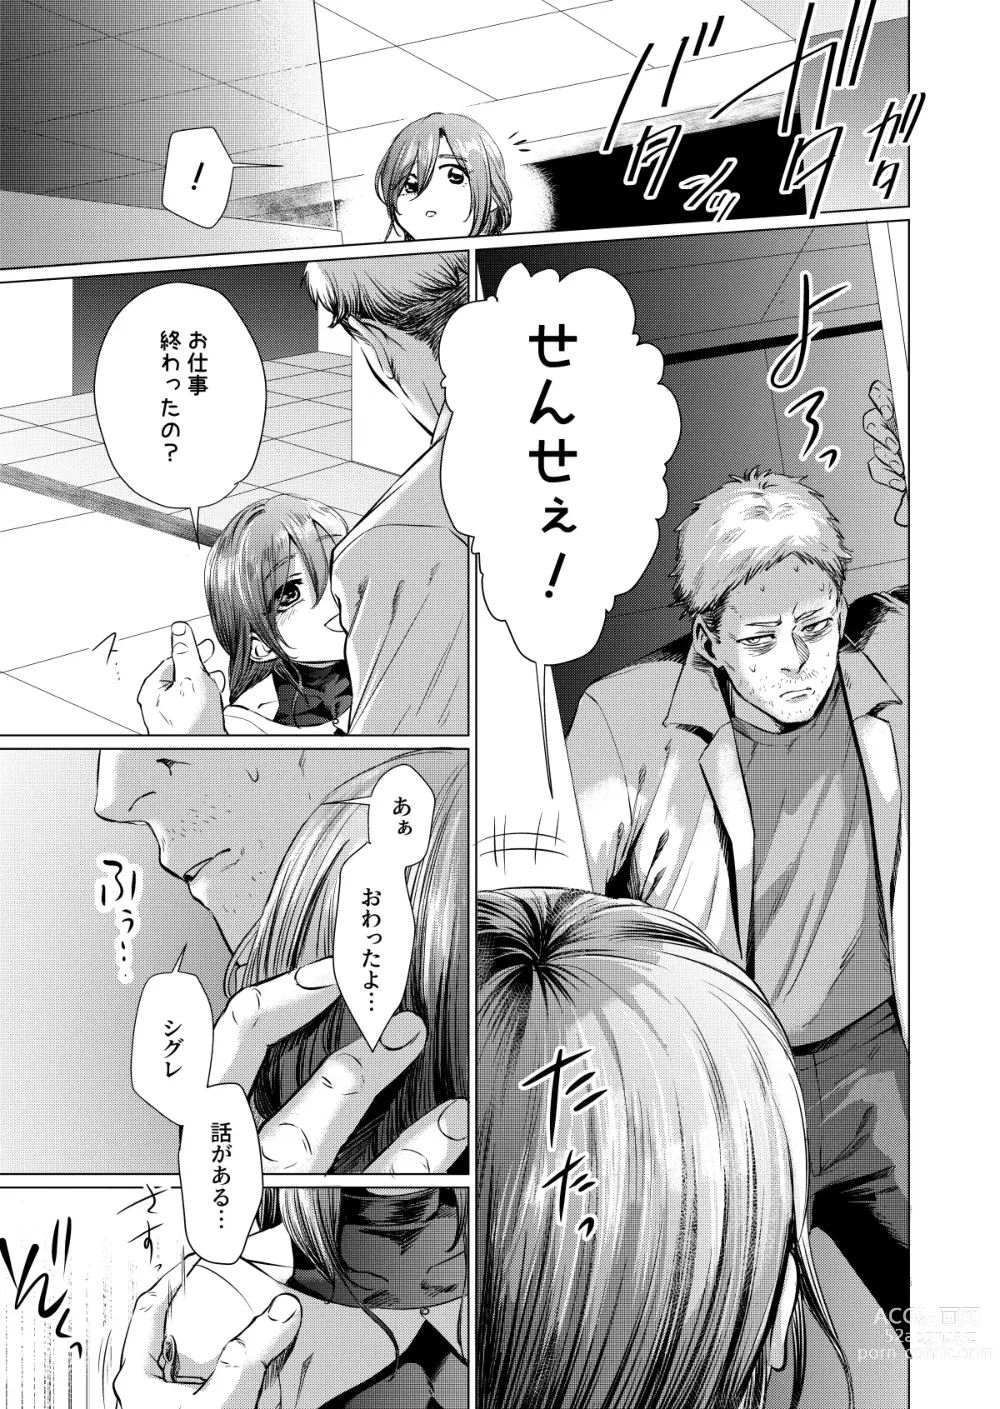 Page 4 of doujinshi Musume Modoki - Daughter similar to daughter 3